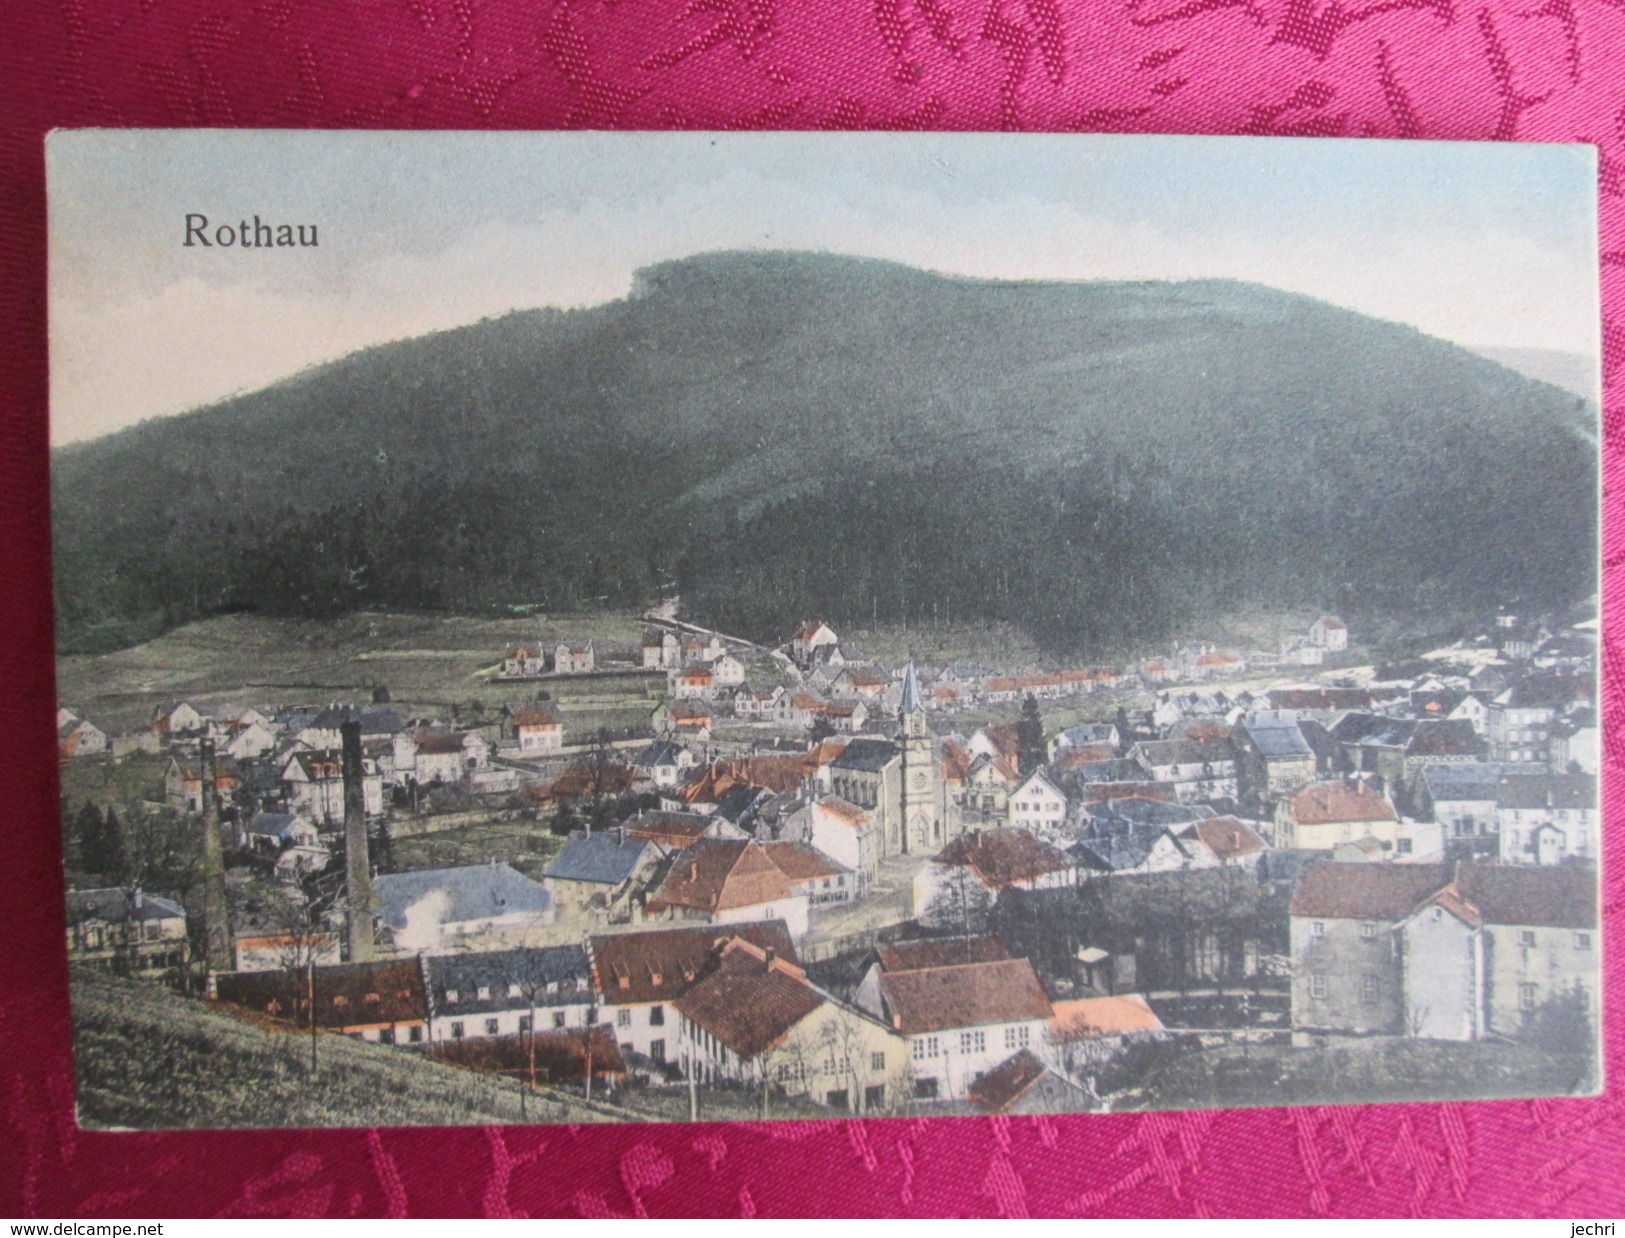 ROTHAU - Rothau